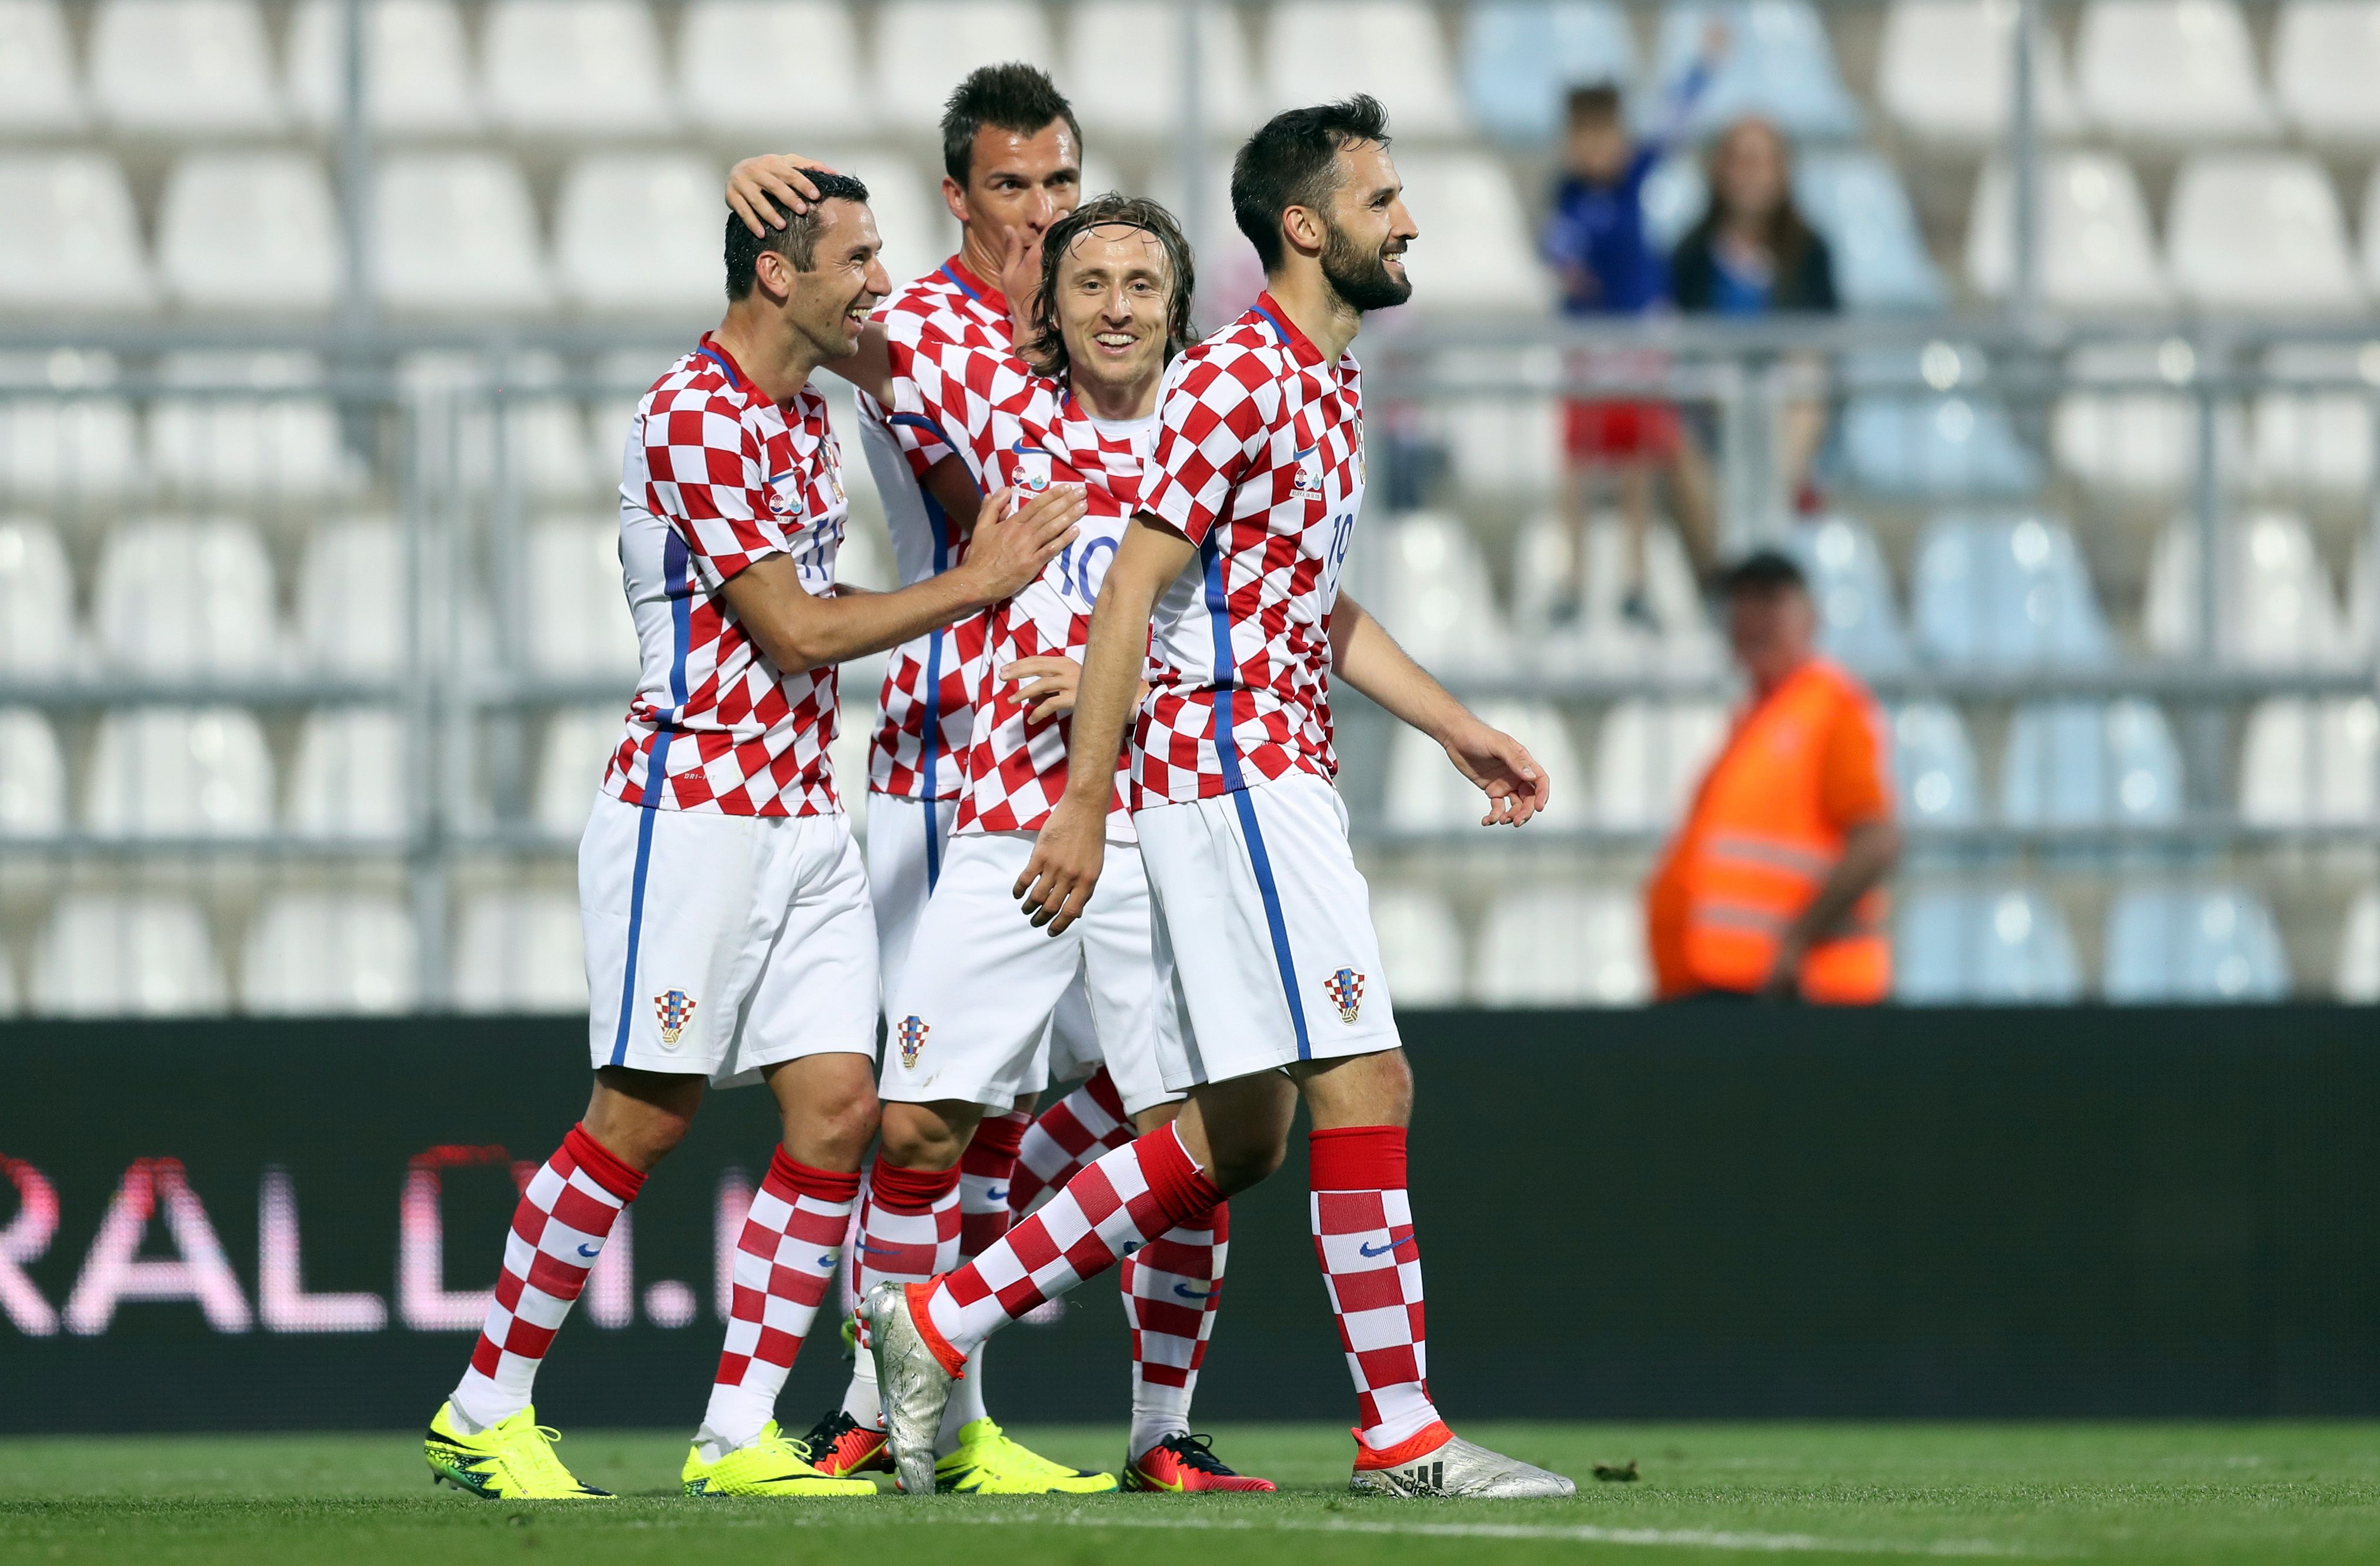 بالفيديو| كرواتيا تكتسح سان مارينو بعشرة أهداف استعدادا لليورو